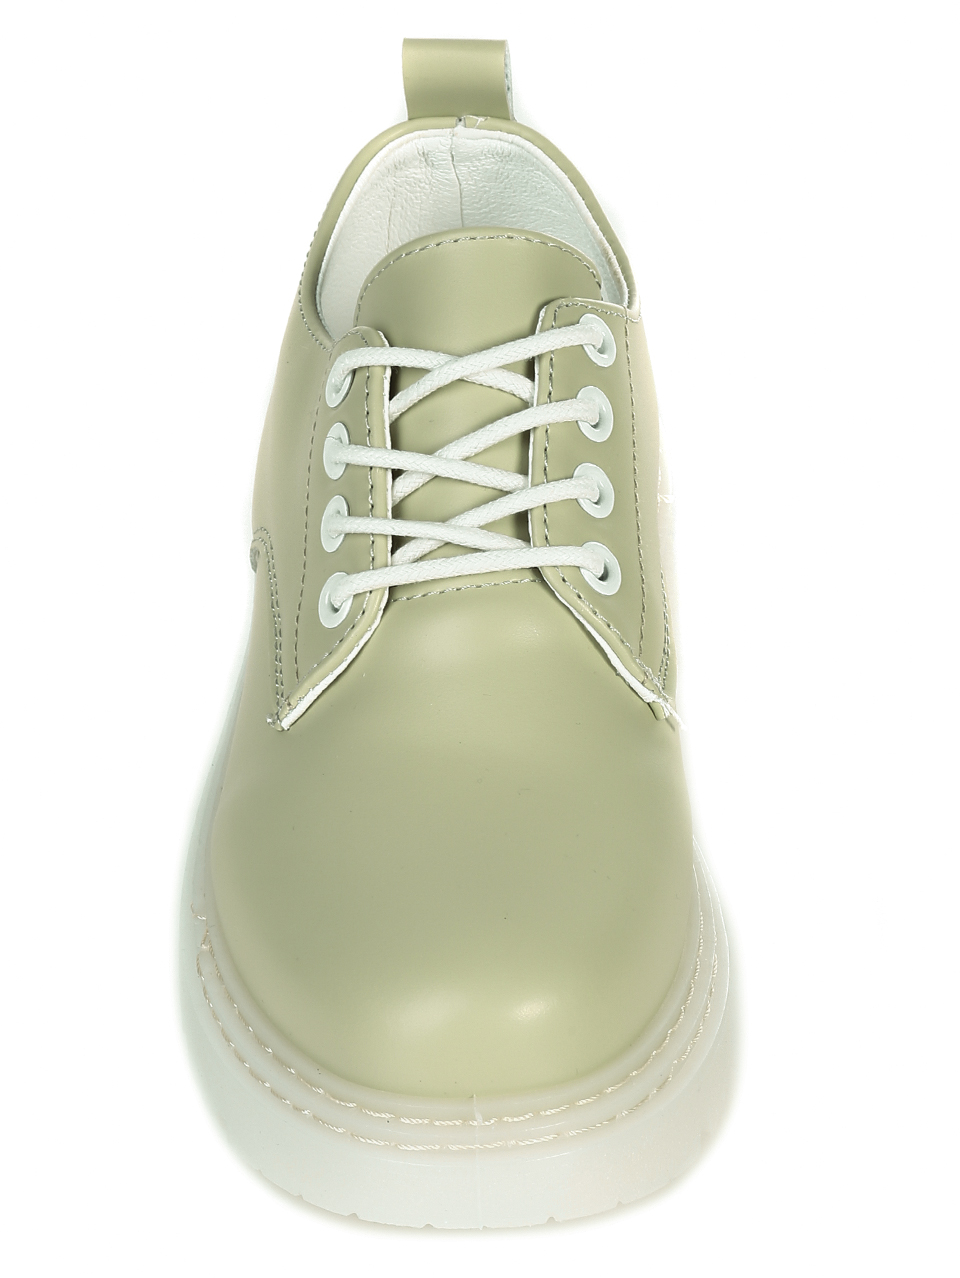 Ежедневни дамски обувки в зелено 3U-21015 green